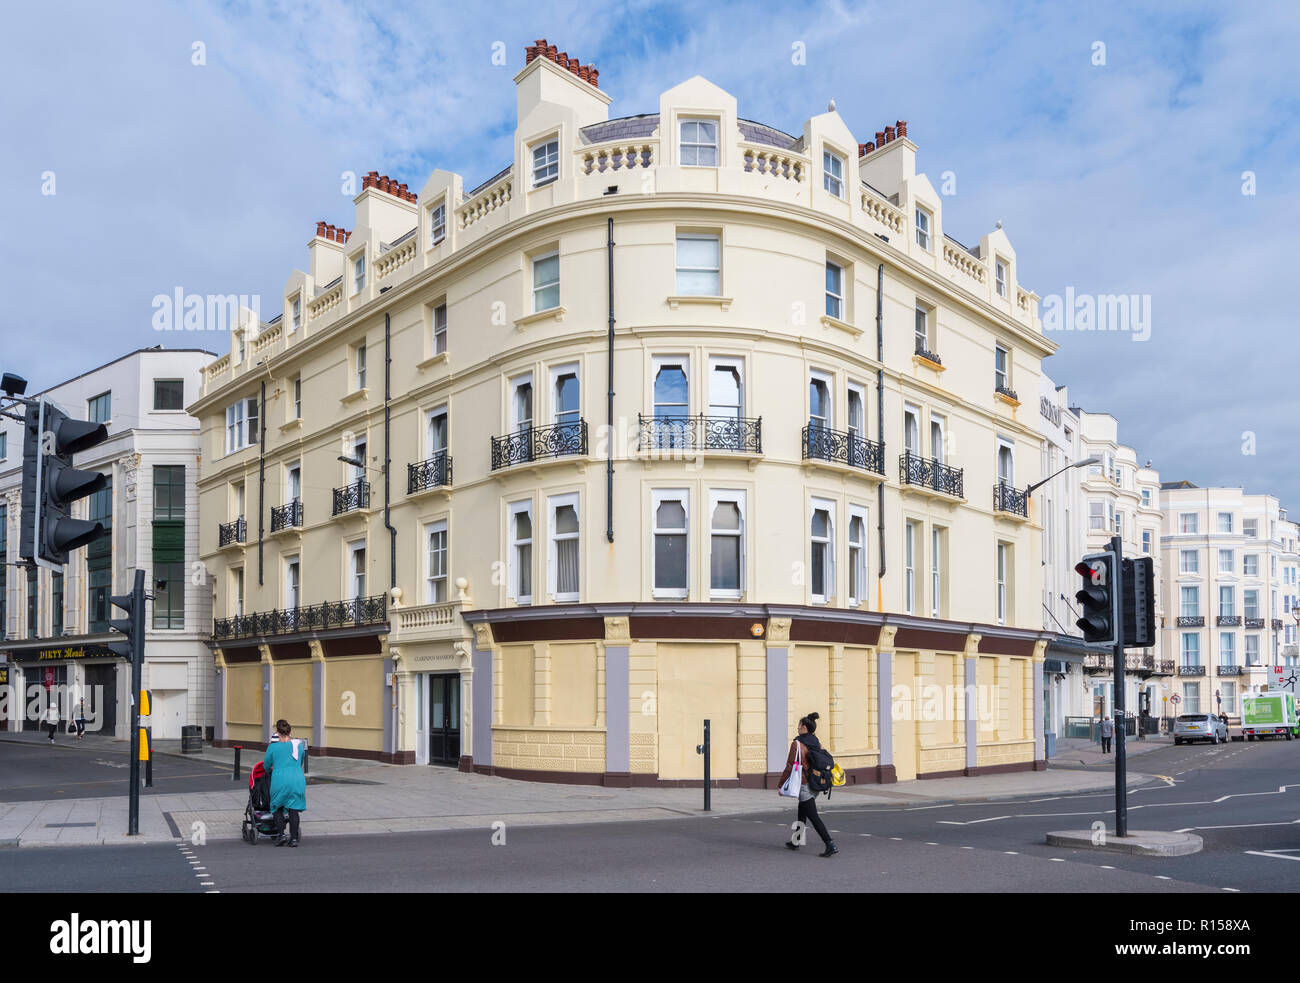 Clarendon Mansions, un bâtiment classé Grade II, maintenant un bloc d'appartements, converti à partir d'un hôtel à Brighton, East Sussex, Angleterre, Royaume-Uni. Banque D'Images